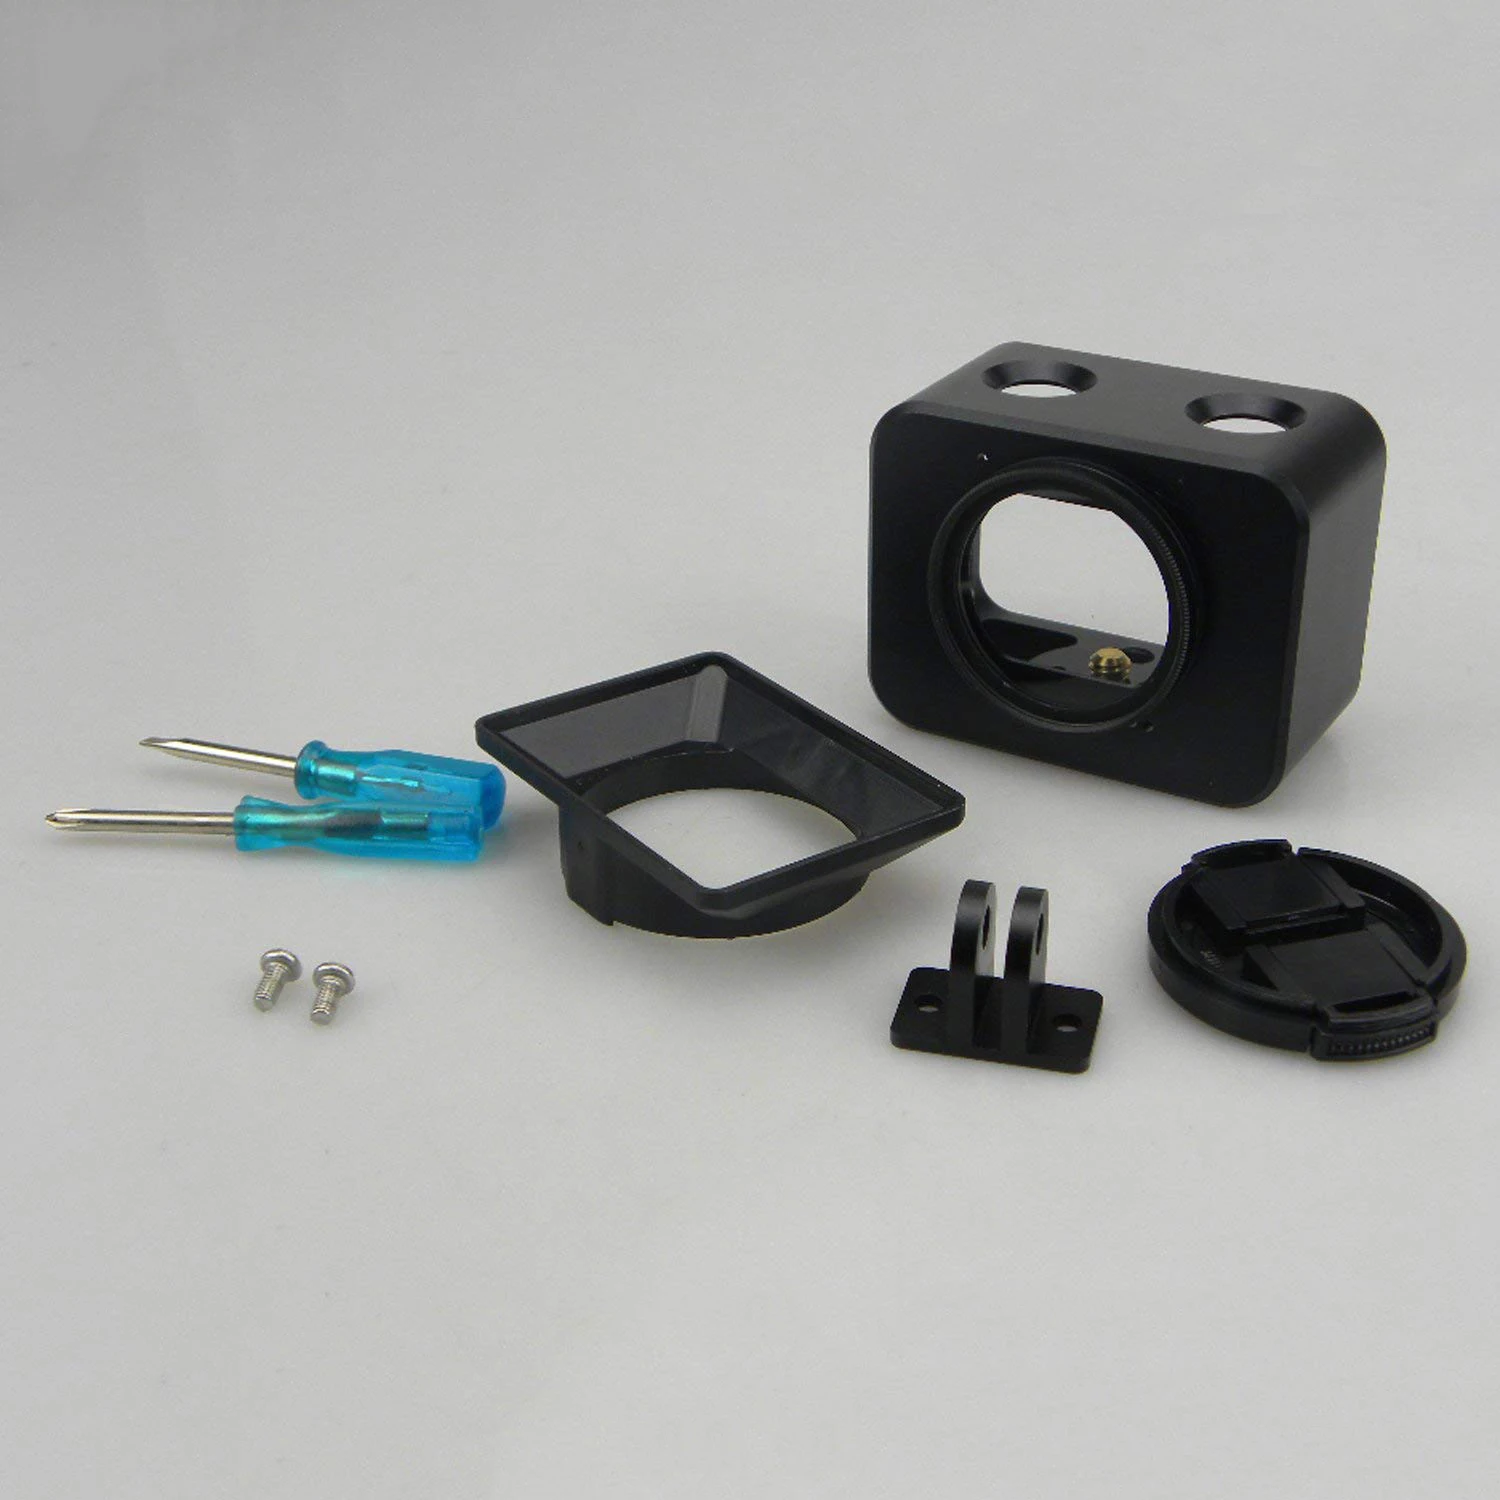 ELOS-камера металлический чехол, комплект для sony RX0 корпус оболочка алюминиевый сплав защитный чехол клетка+ 37 мм УФ фильтр объектив+ объектив солнцезащитный козырек w